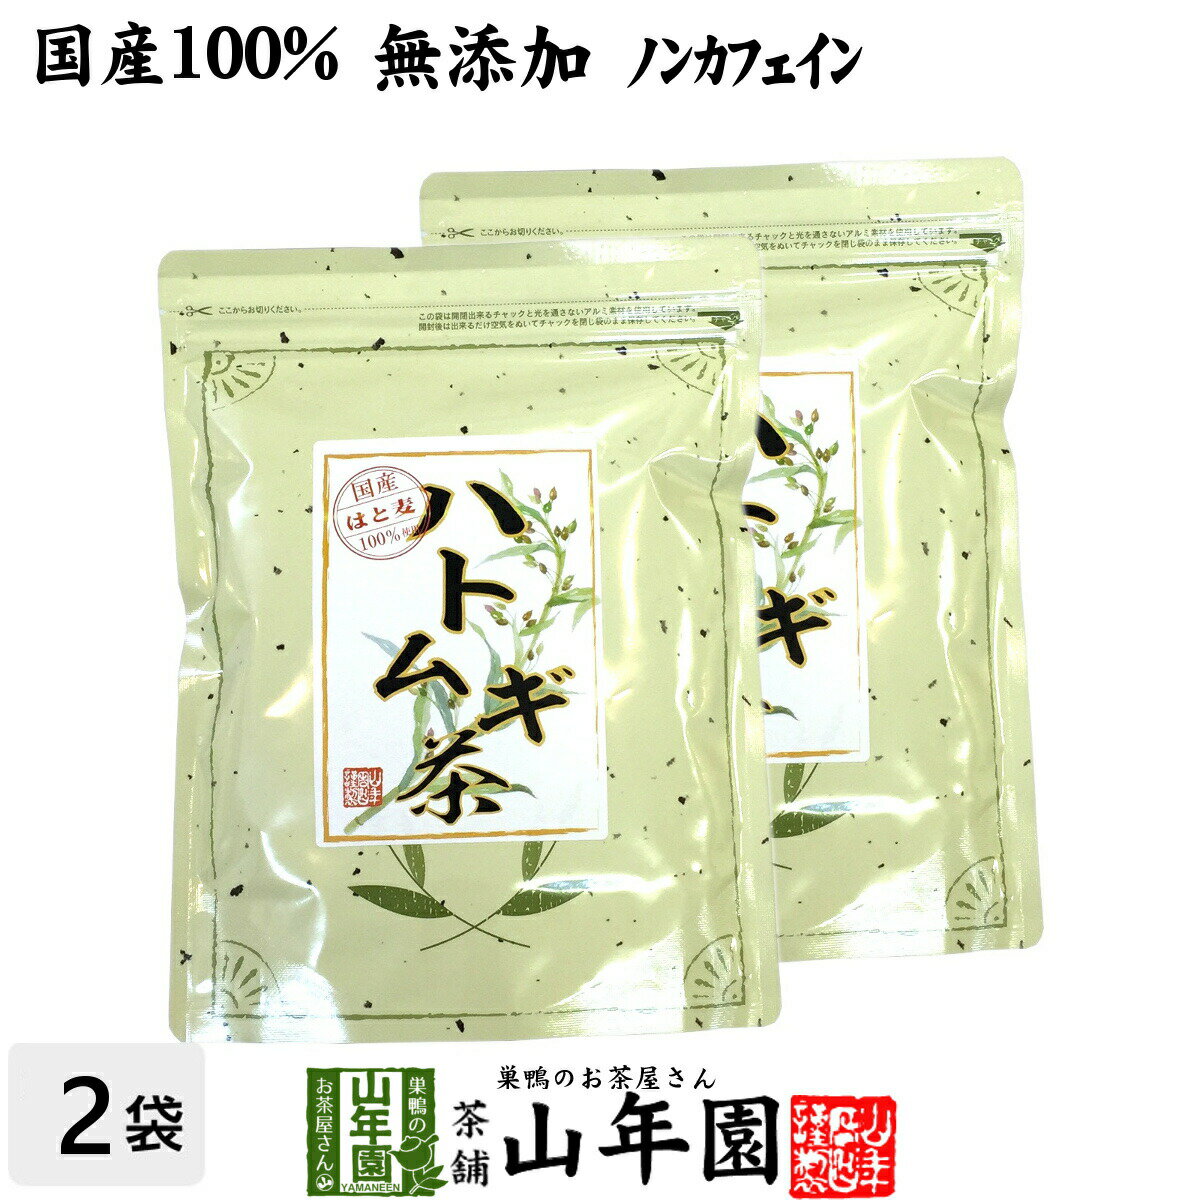 【国産 100%】ハトムギ茶 7g×24パック×2袋セット 